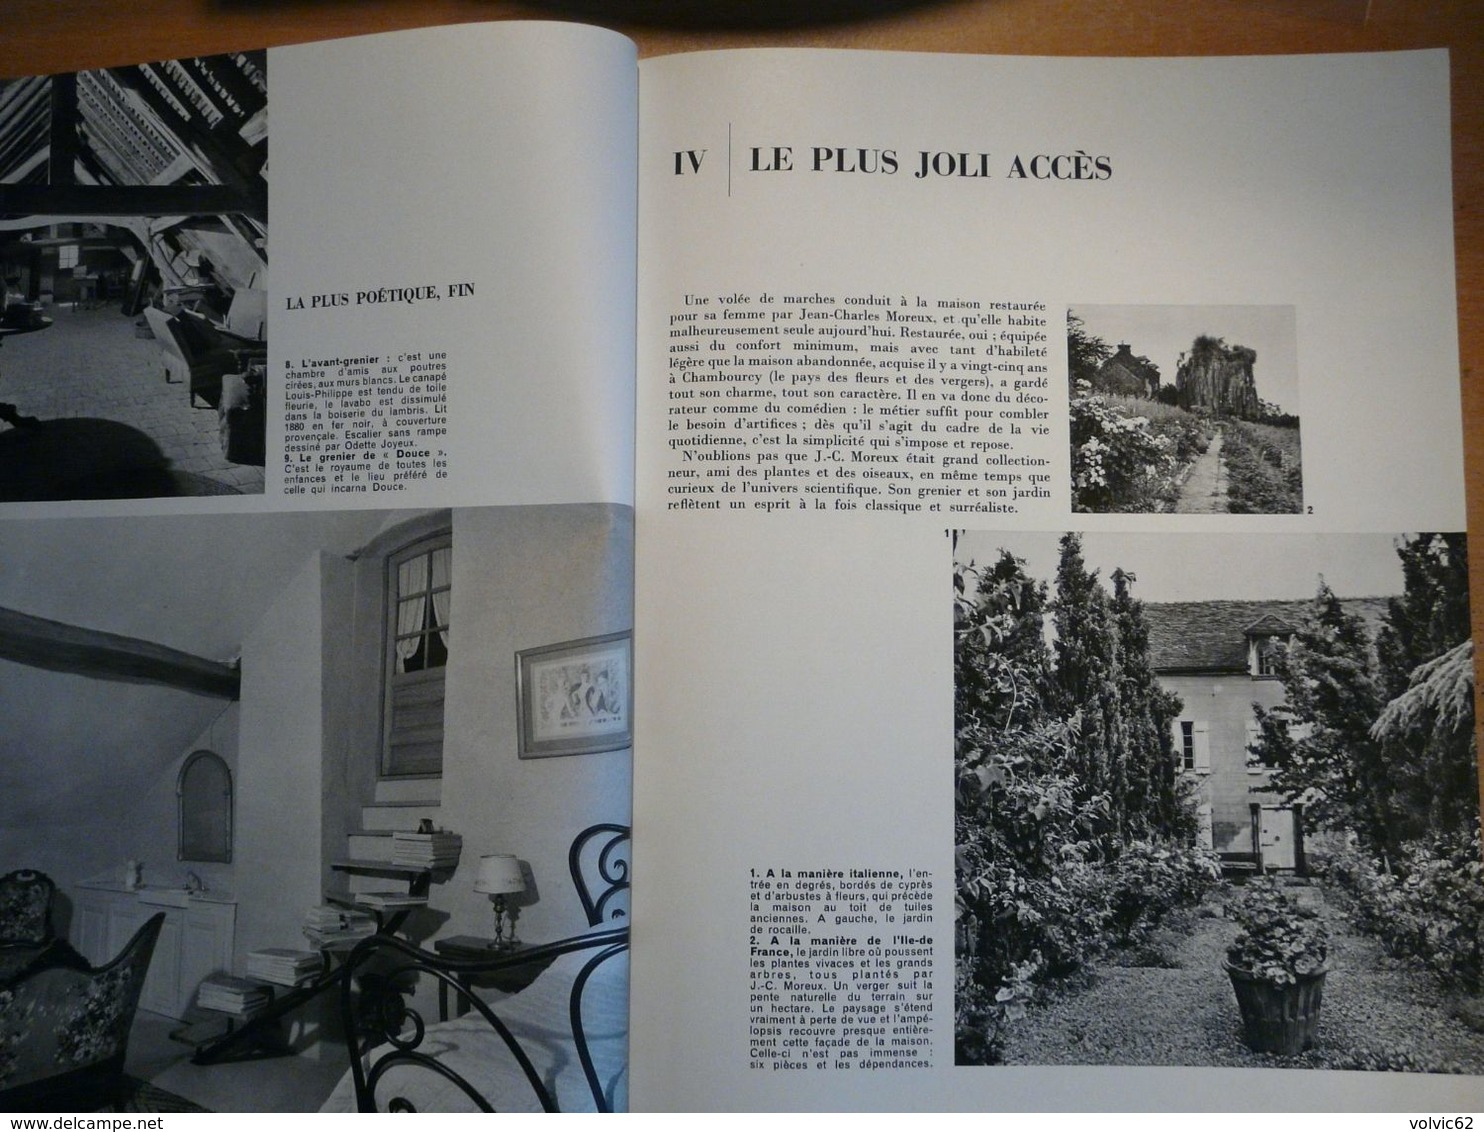 Plaisir de france 1963 dreux pithiviers chambourcy celle les bordes baie des cannebiers  ponche St Tropez St Aygulf